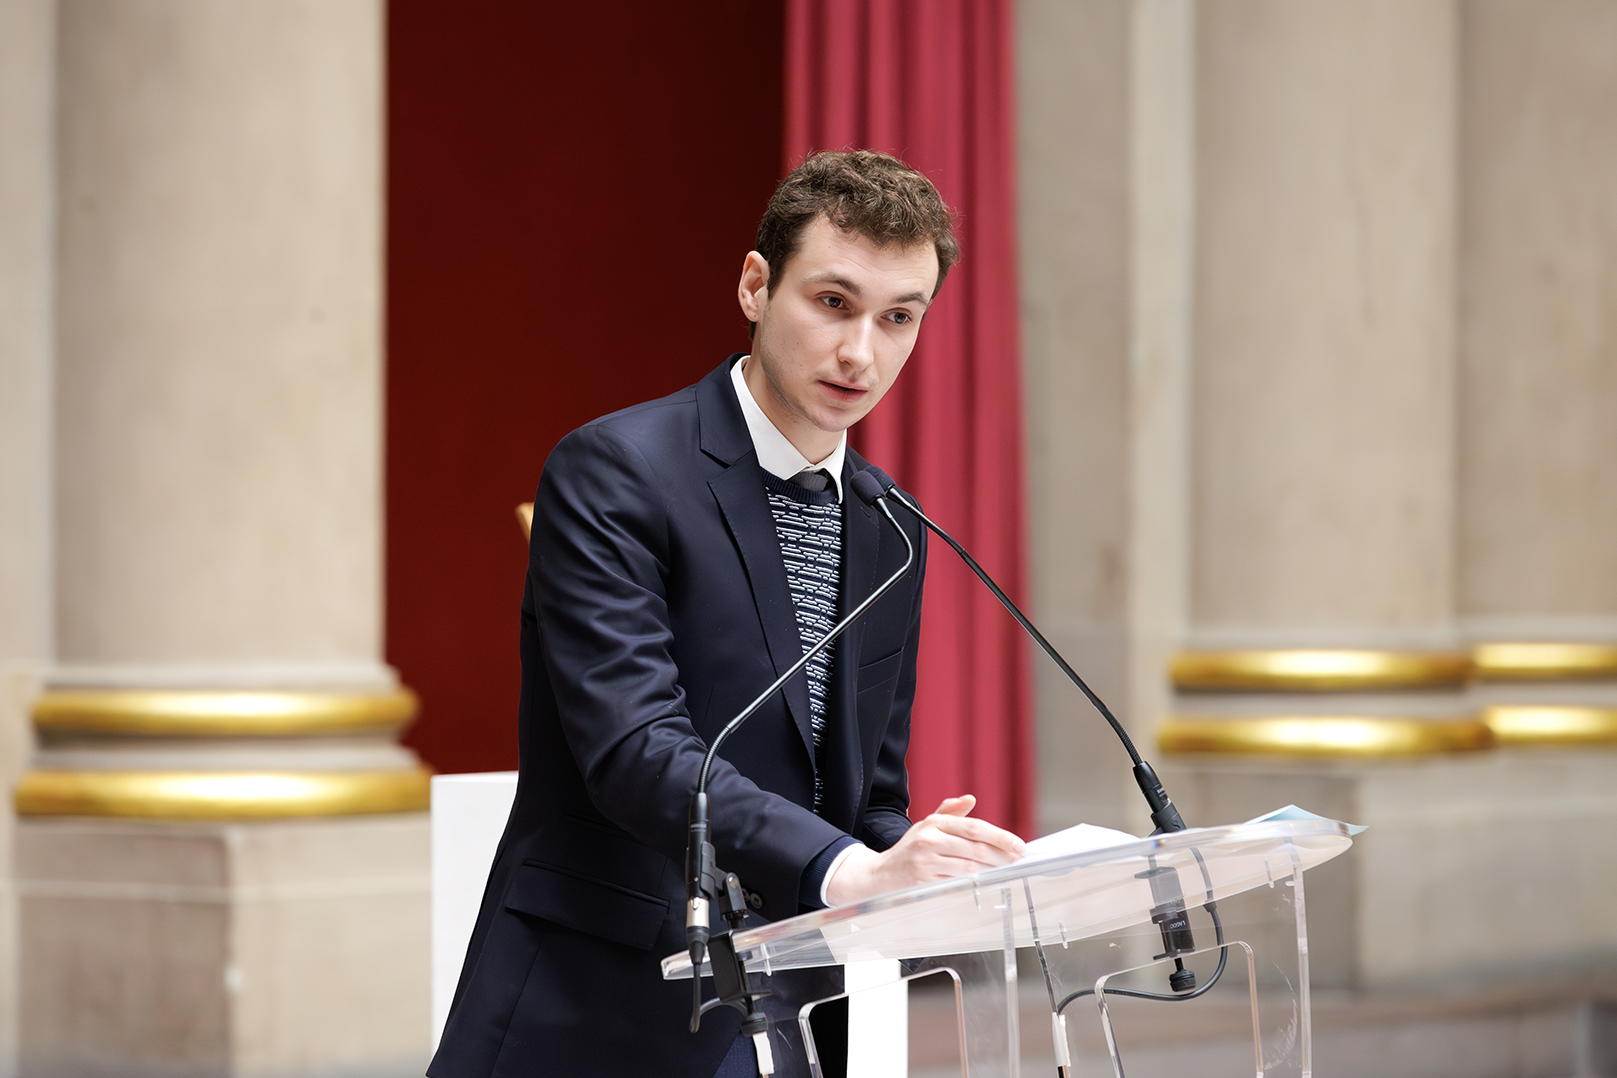 À son tour, Mathis Napierala, vice-président étudiant de l’Université de Clermont Auvergne a pris la parole. © Nicolas Busser